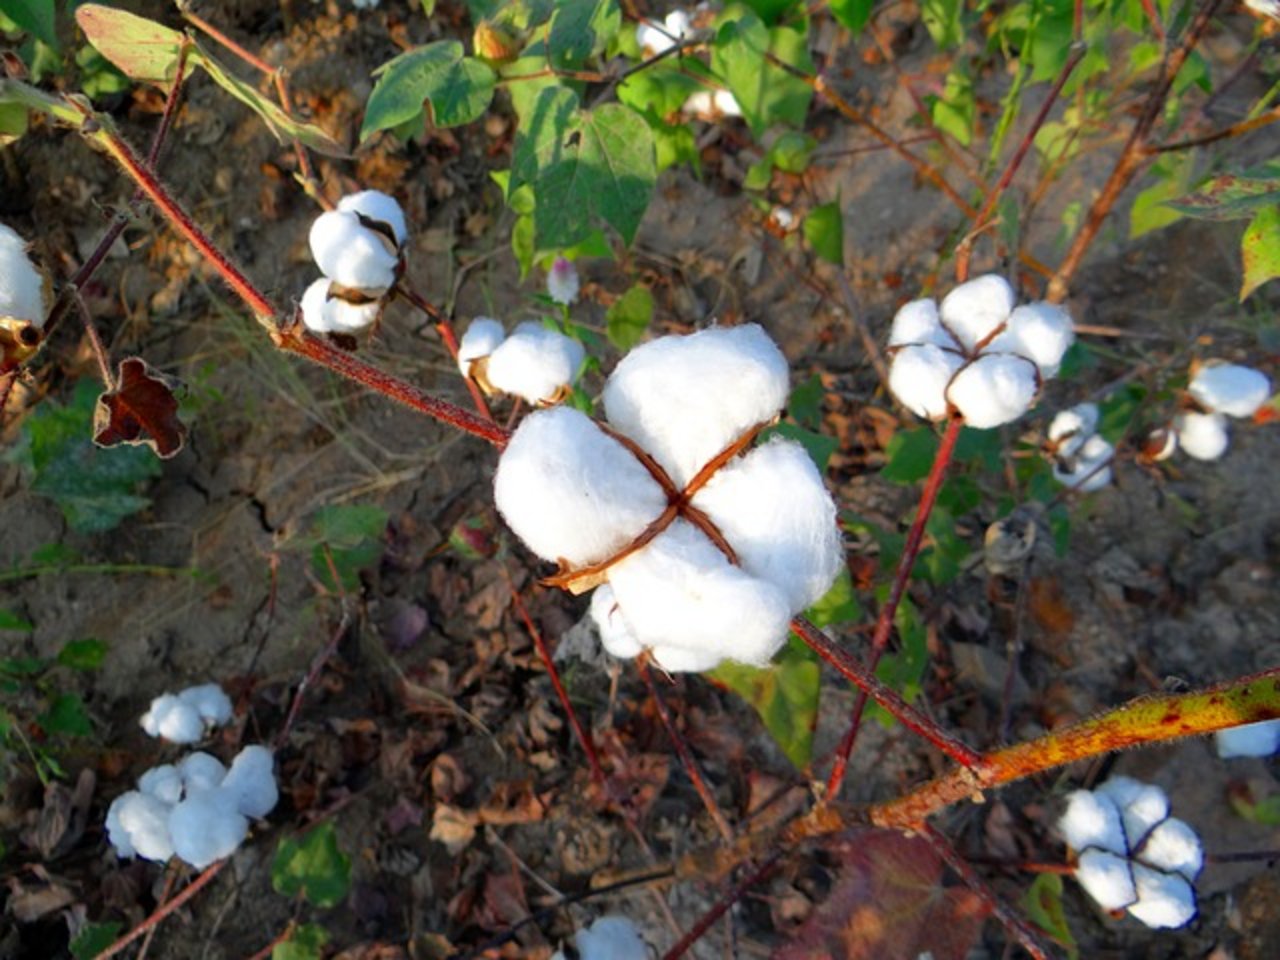 Die Baumwoll-Produktion ist verantwortlich für einen erheblichen Wasserverbrauch. (Bild Pixabay)